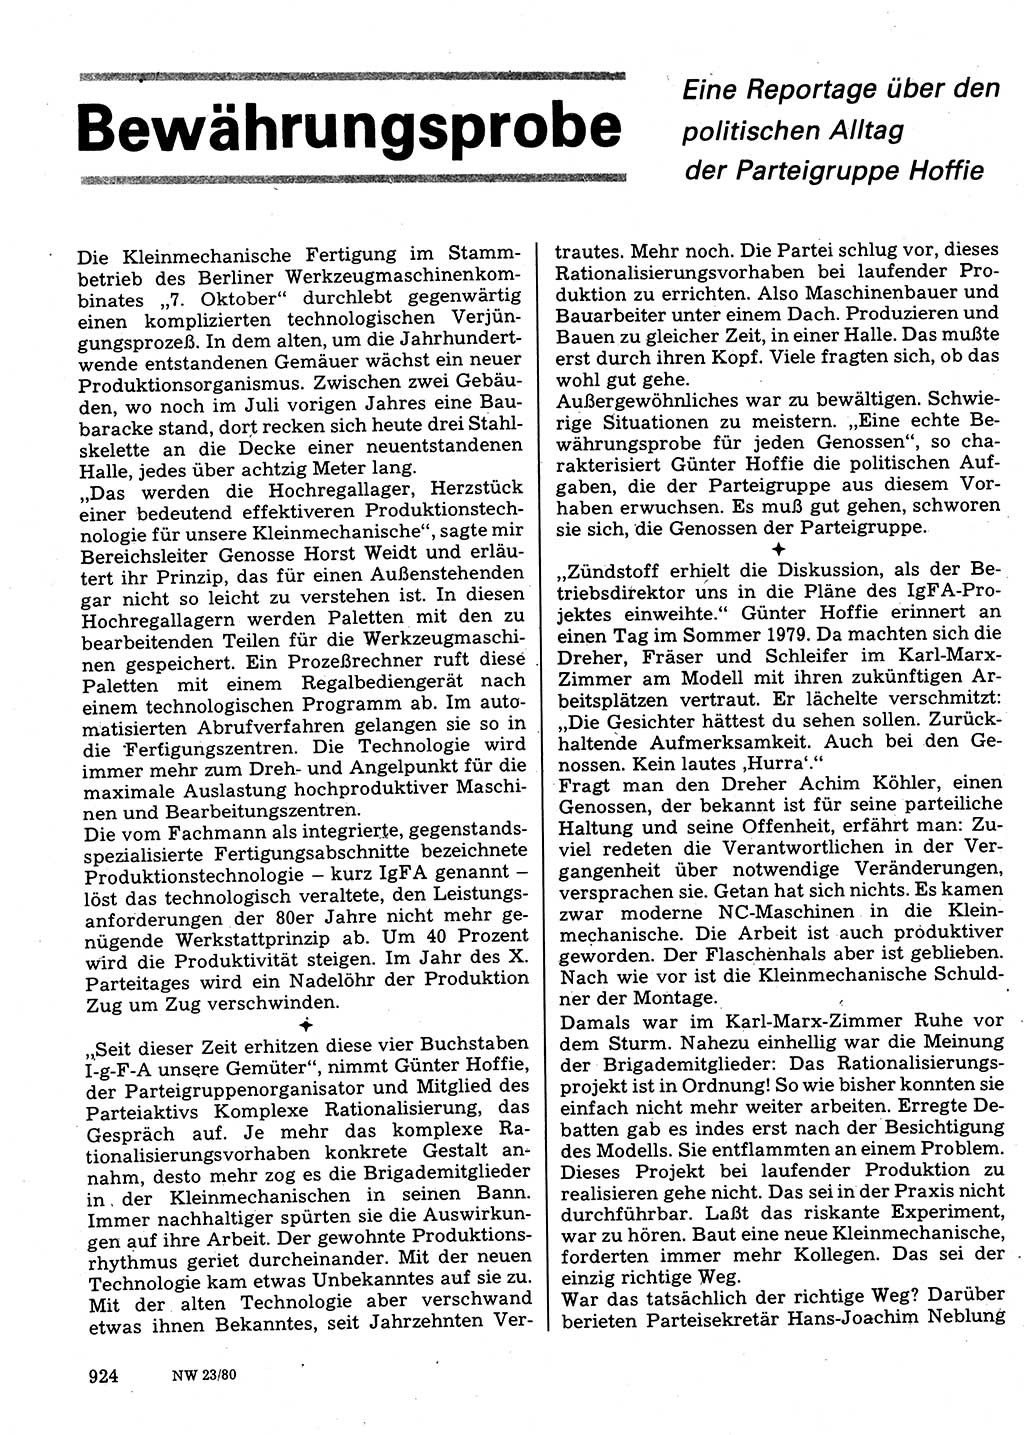 Neuer Weg (NW), Organ des Zentralkomitees (ZK) der SED (Sozialistische Einheitspartei Deutschlands) für Fragen des Parteilebens, 35. Jahrgang [Deutsche Demokratische Republik (DDR)] 1980, Seite 924 (NW ZK SED DDR 1980, S. 924)